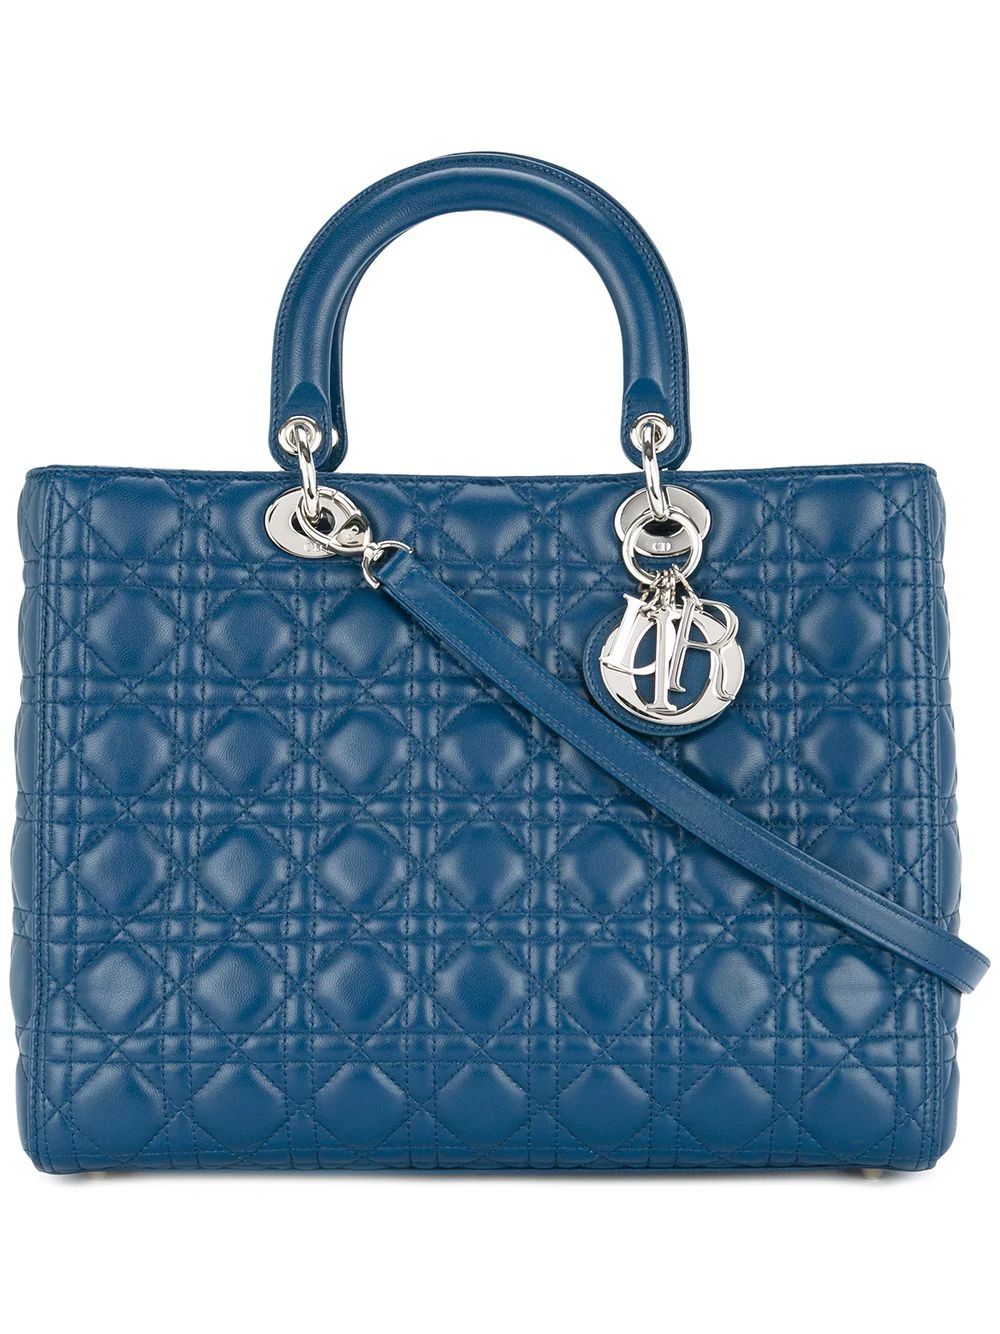 Christian Dior Vintage Lady Dior Cannage 2way handbag - Blue | FarFetch US